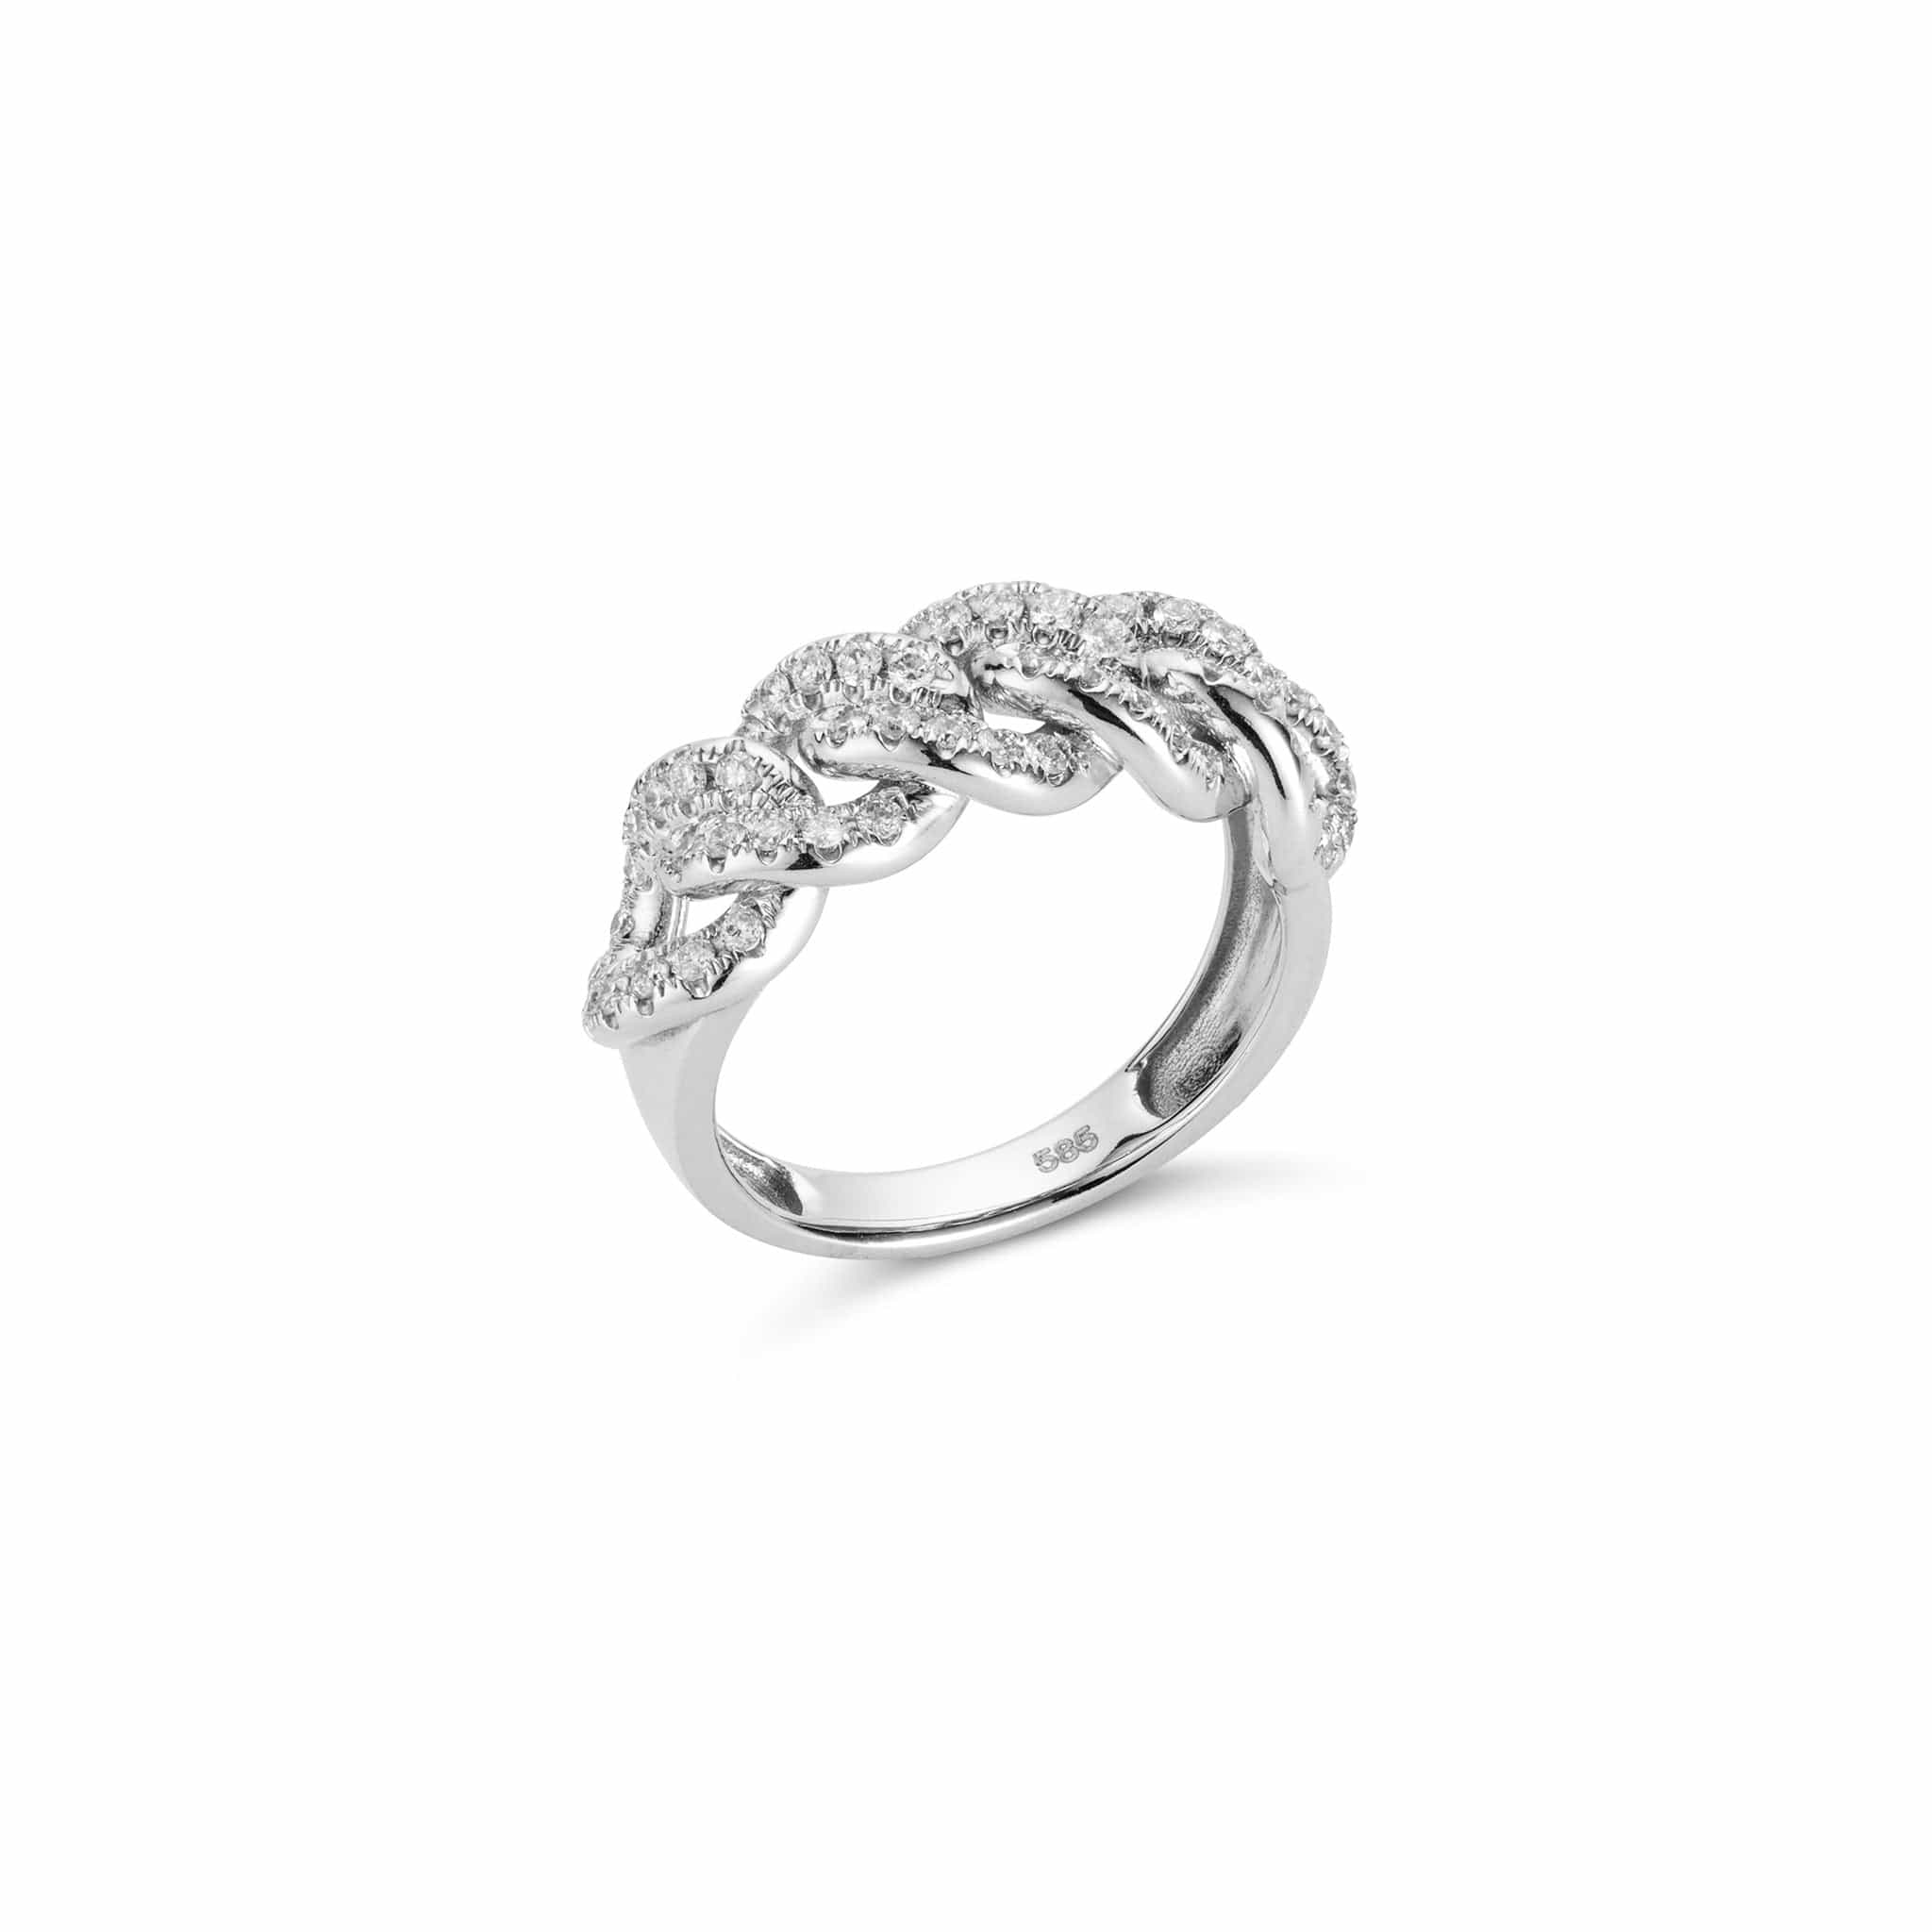 Atlas diamond braided ring